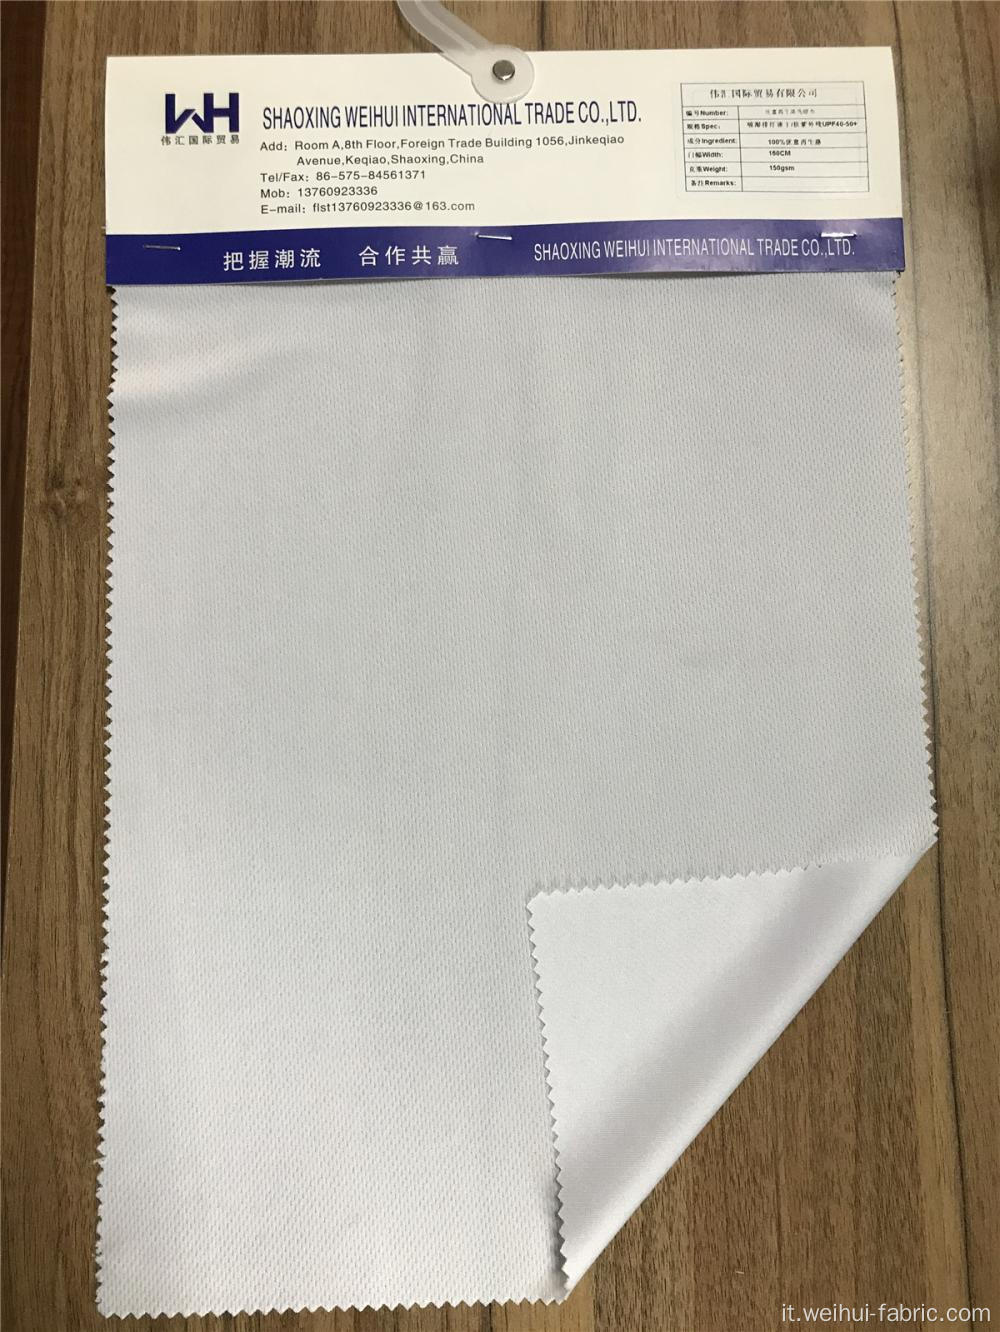 Tessuti a maglia singola bianca 100T lavorati a maglia di alta qualità